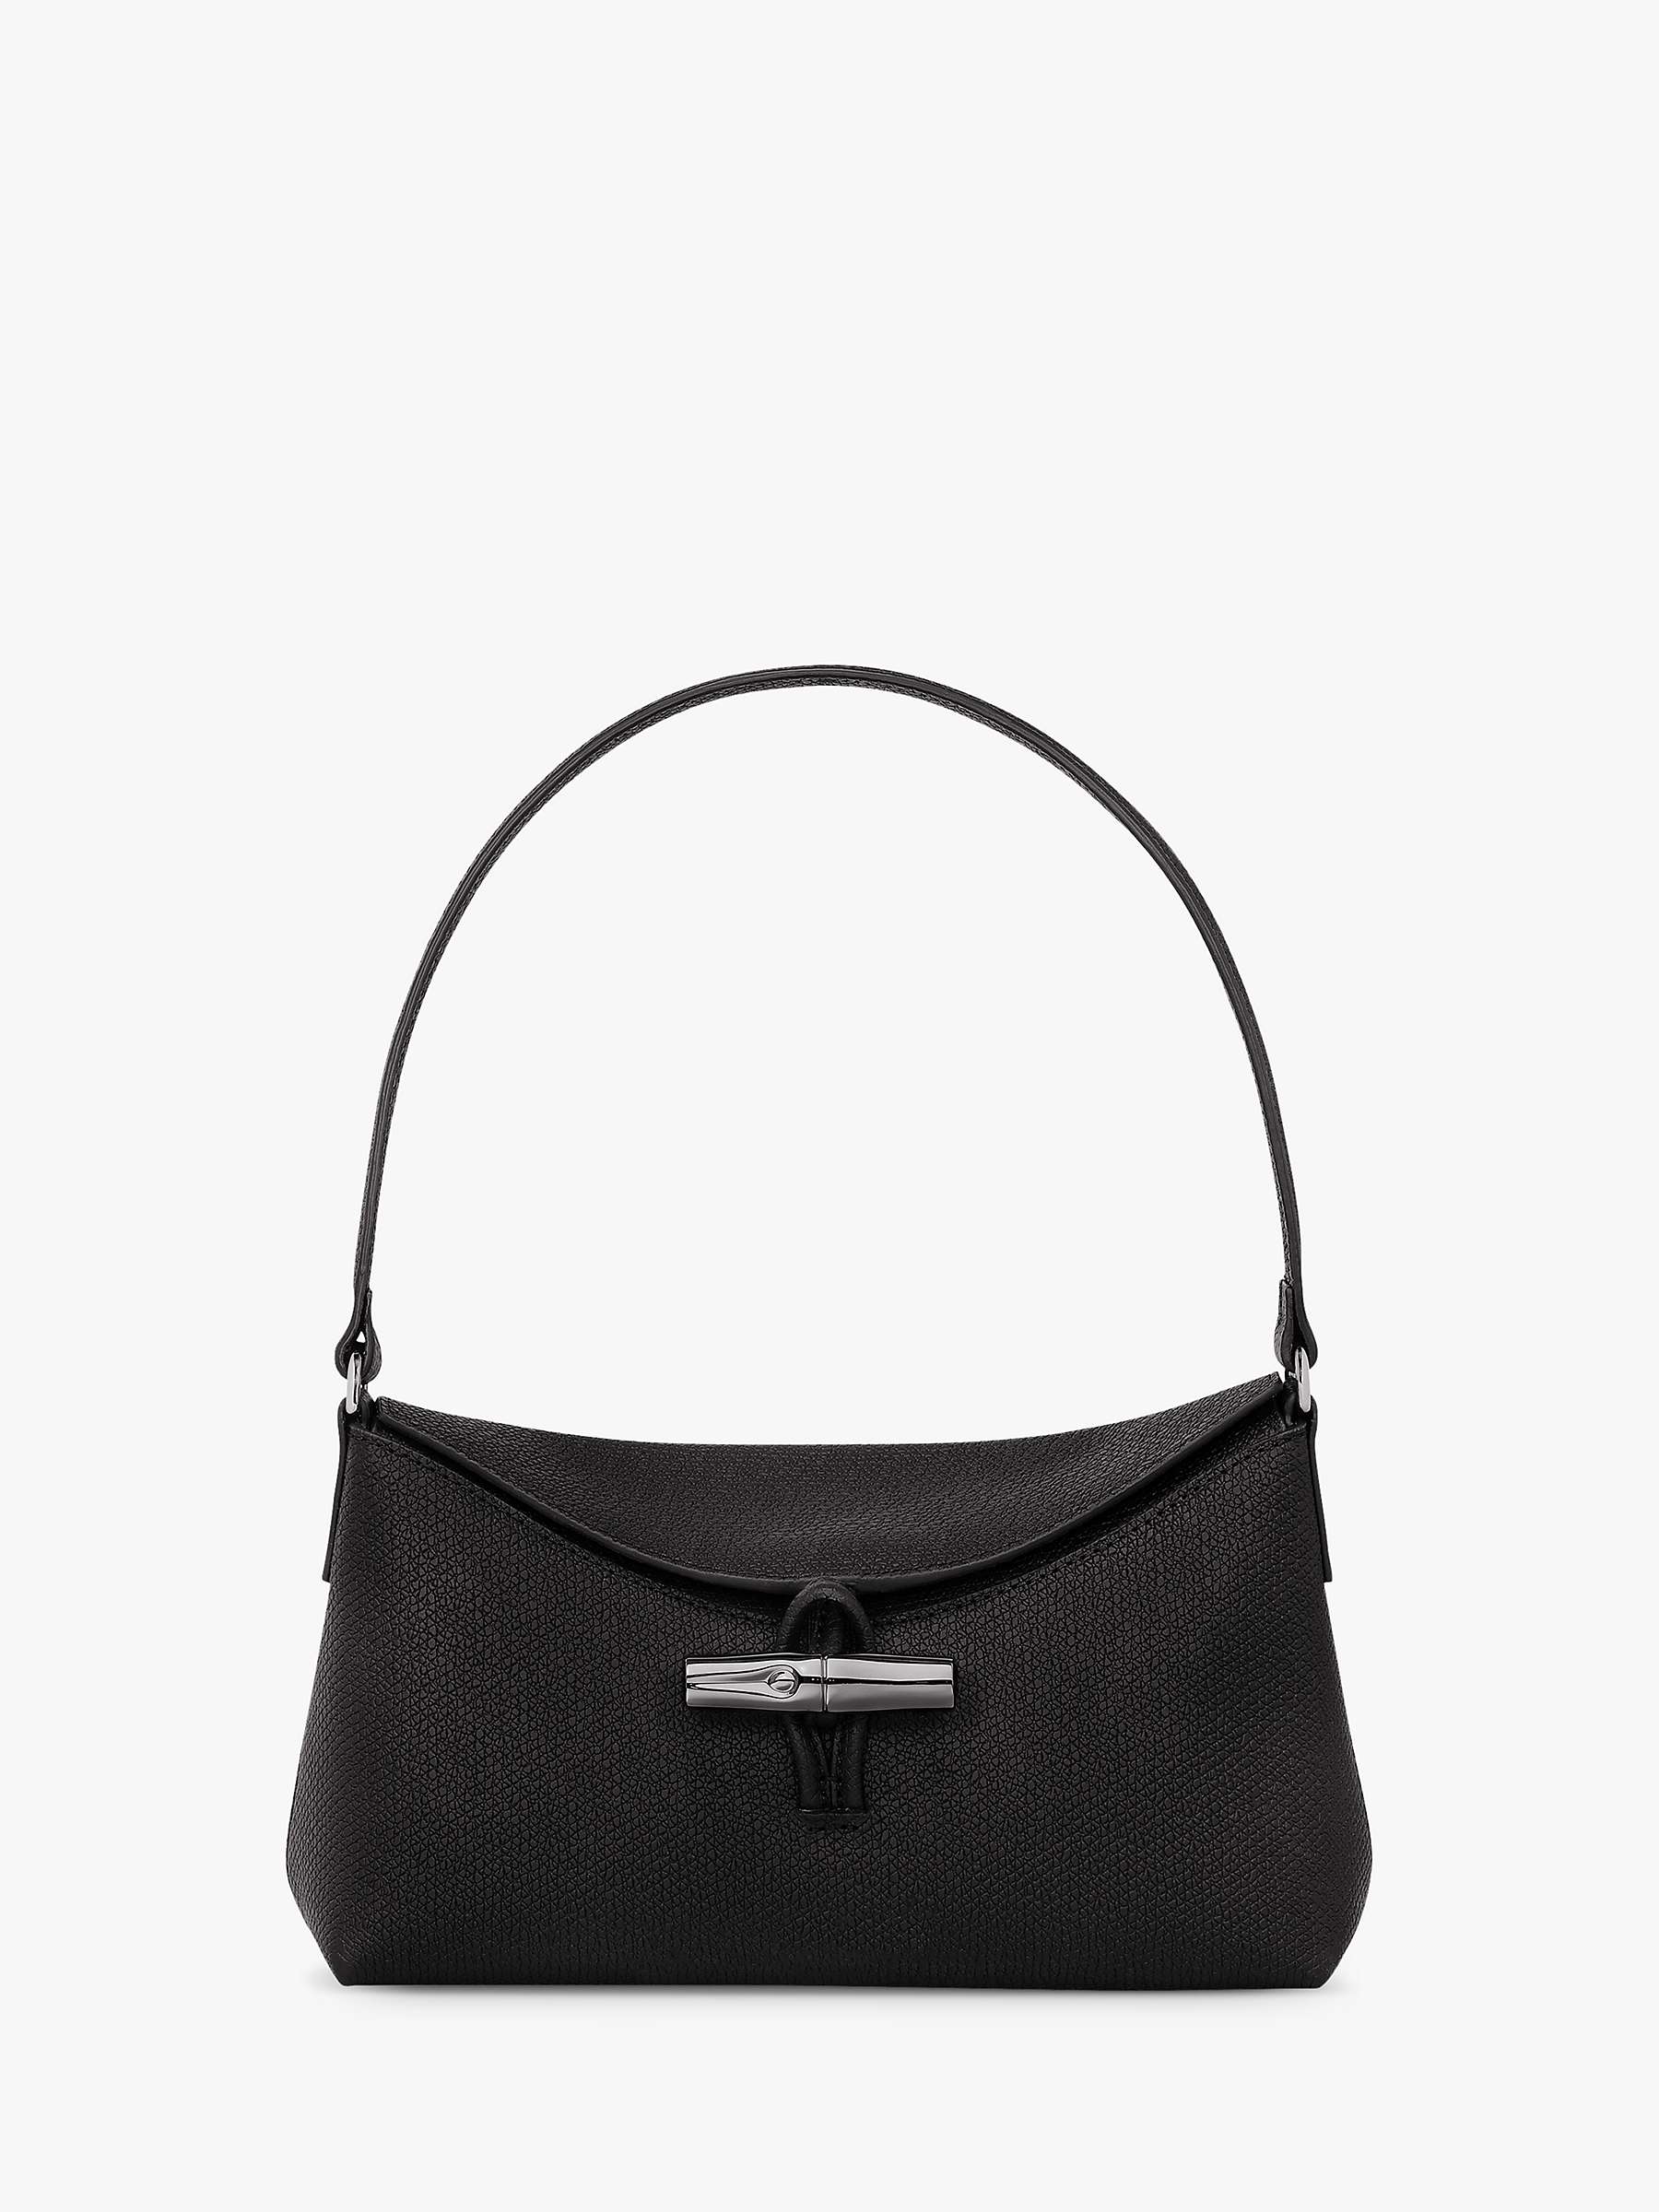 Buy Longchamp Roseau Small Hobo Bag Online at johnlewis.com